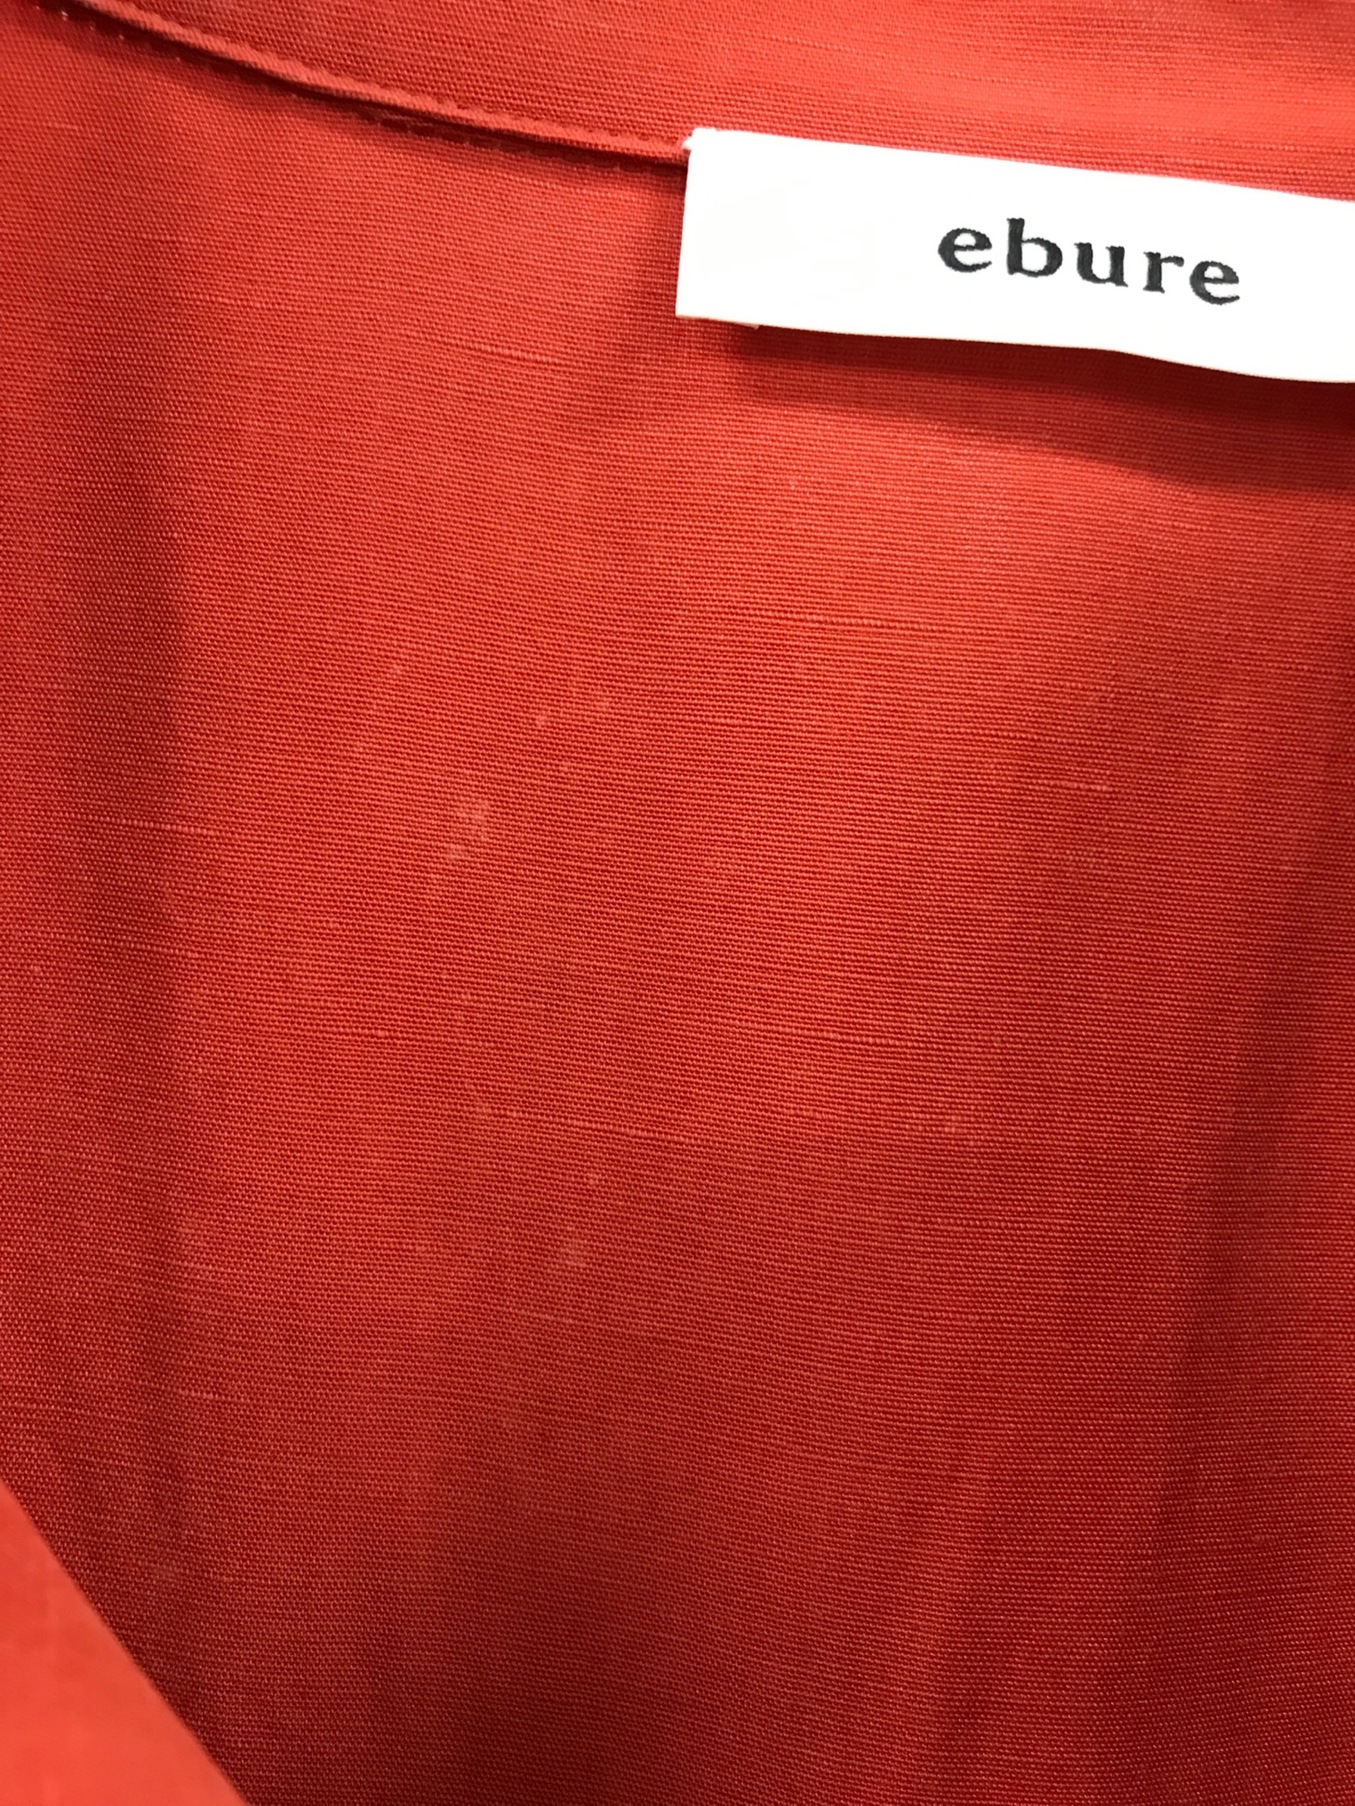 ebure (エブール) テンセルリネンウエストマークシャツワンピース サイズ:36